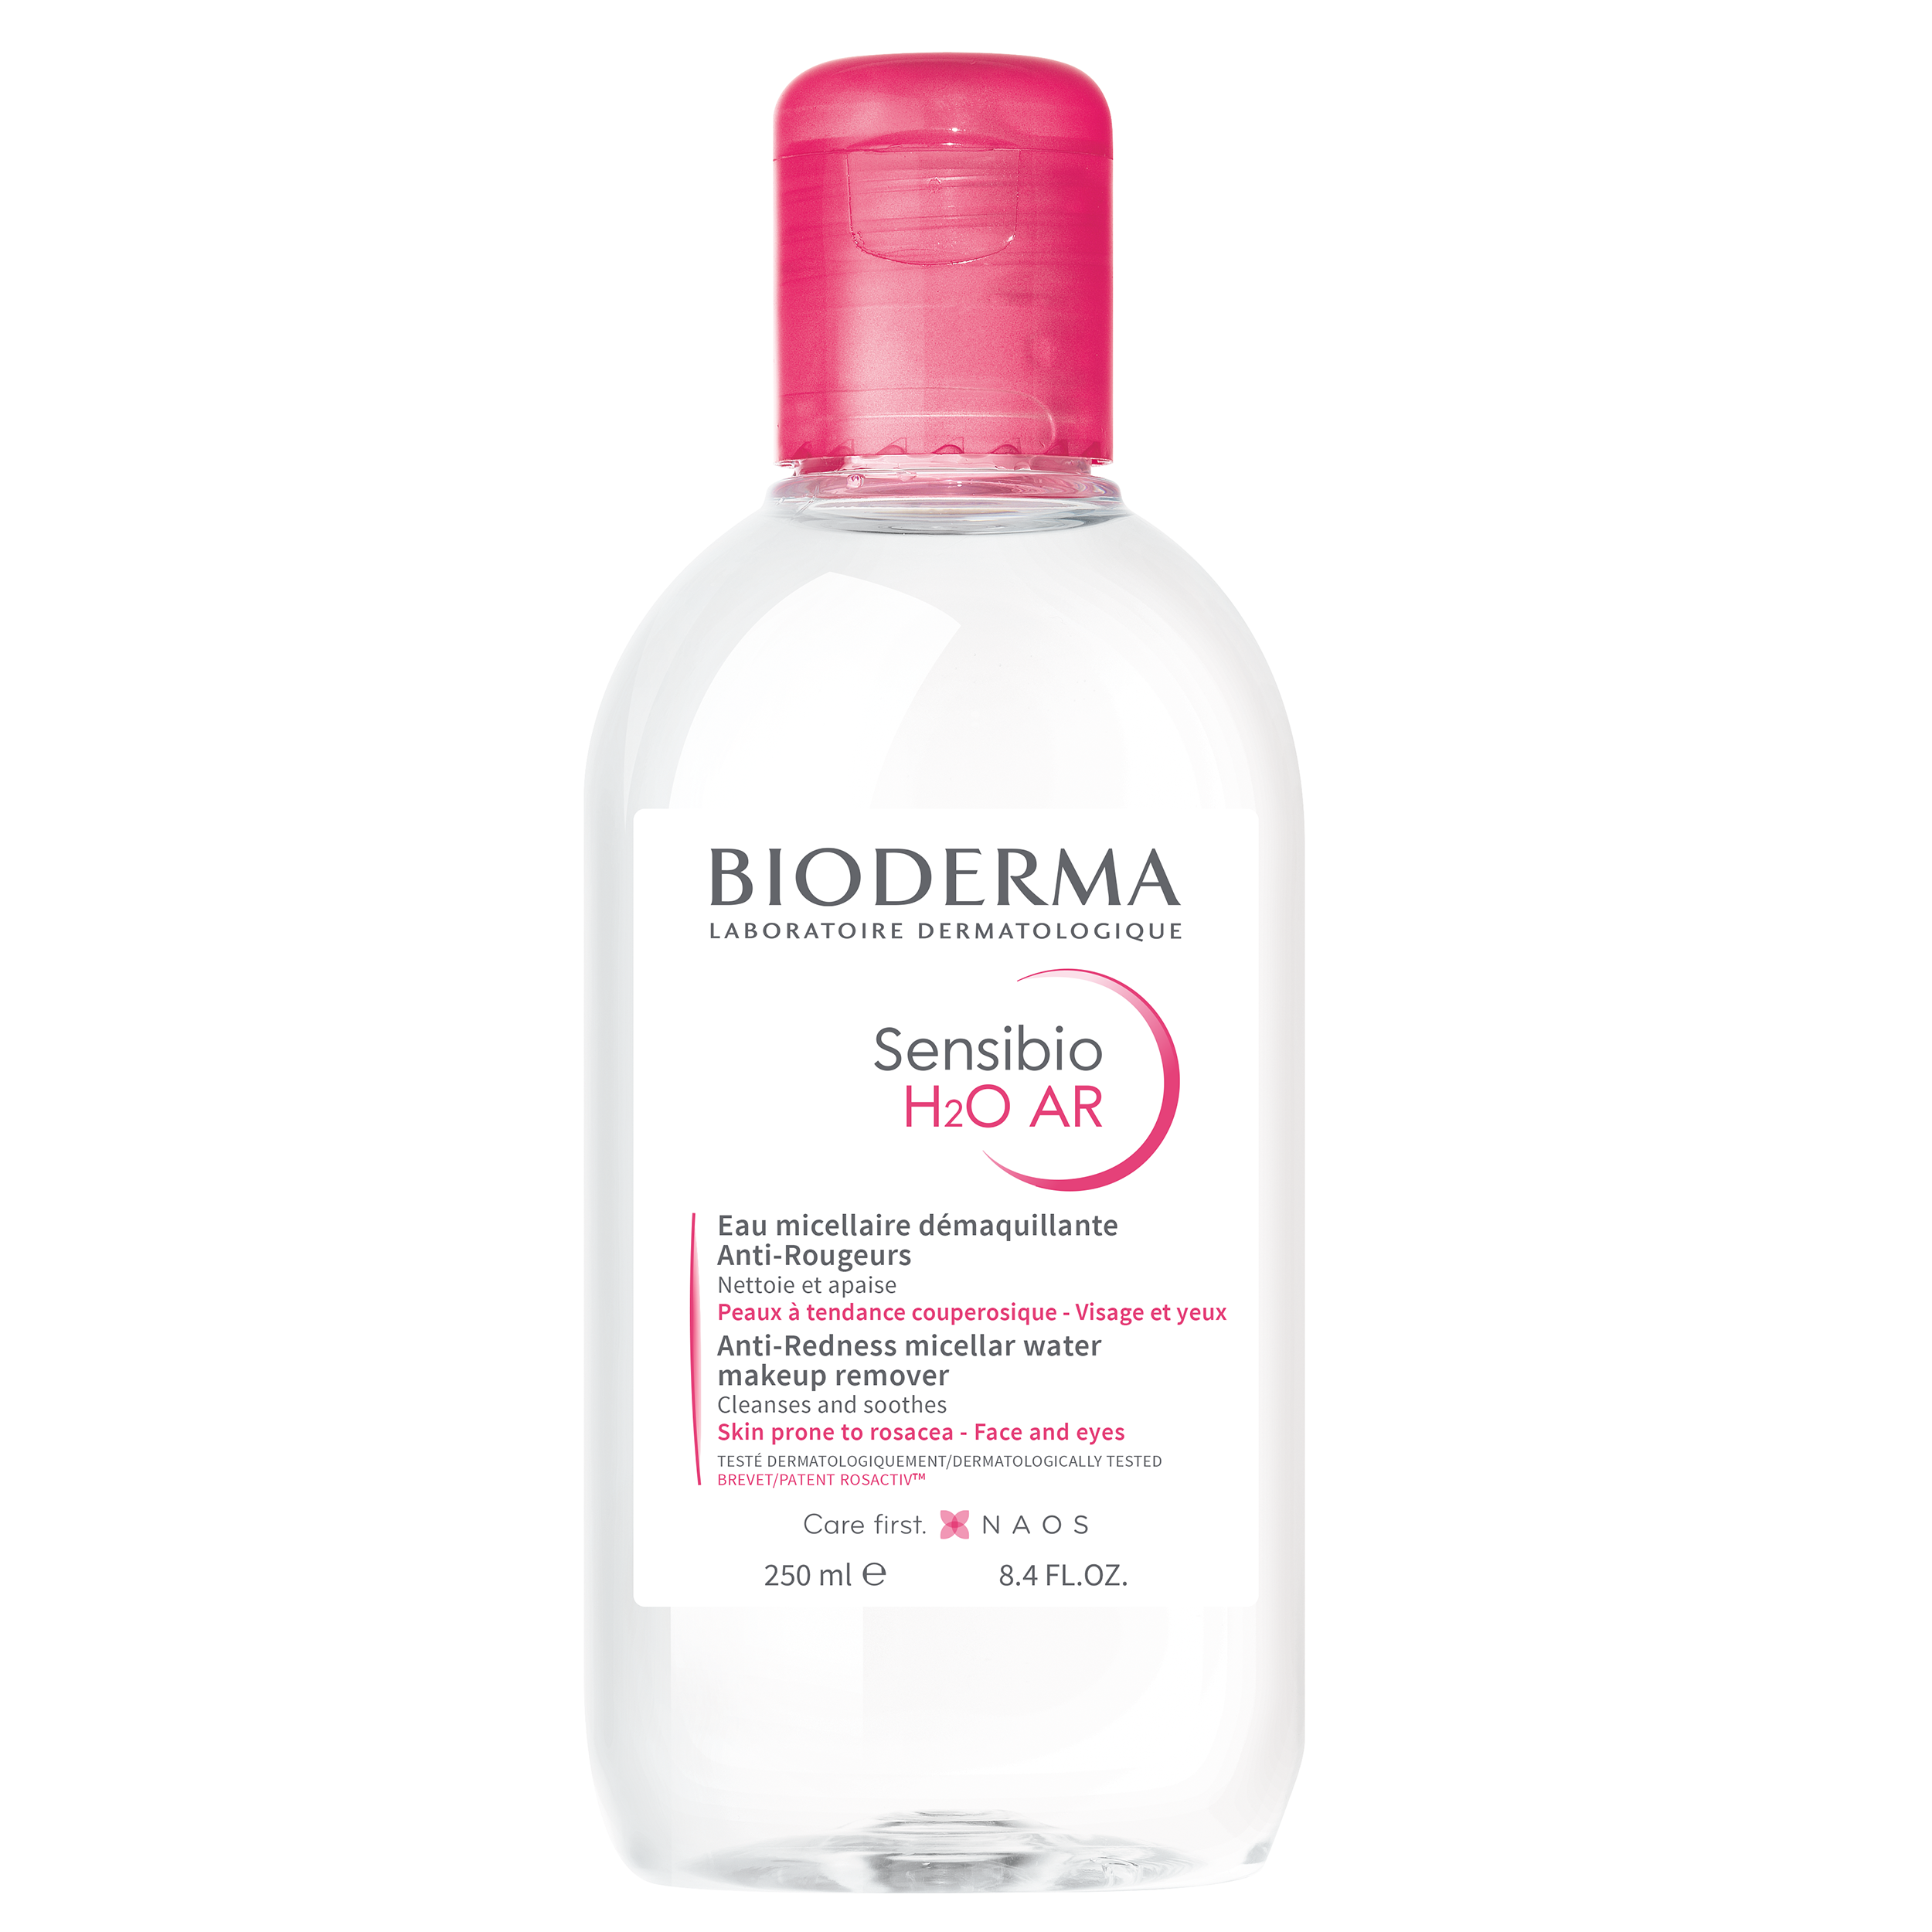 Bioderma Bioderma Sensibio H2O AR Micellar Water Νερό Καθαρισμού & Ντεμακιγιάζ Προσώπου Ματιών & Χειλιών για Ευαίσθητες Επιδερμίδες με Τάση για Ερυθρότητα 250ml